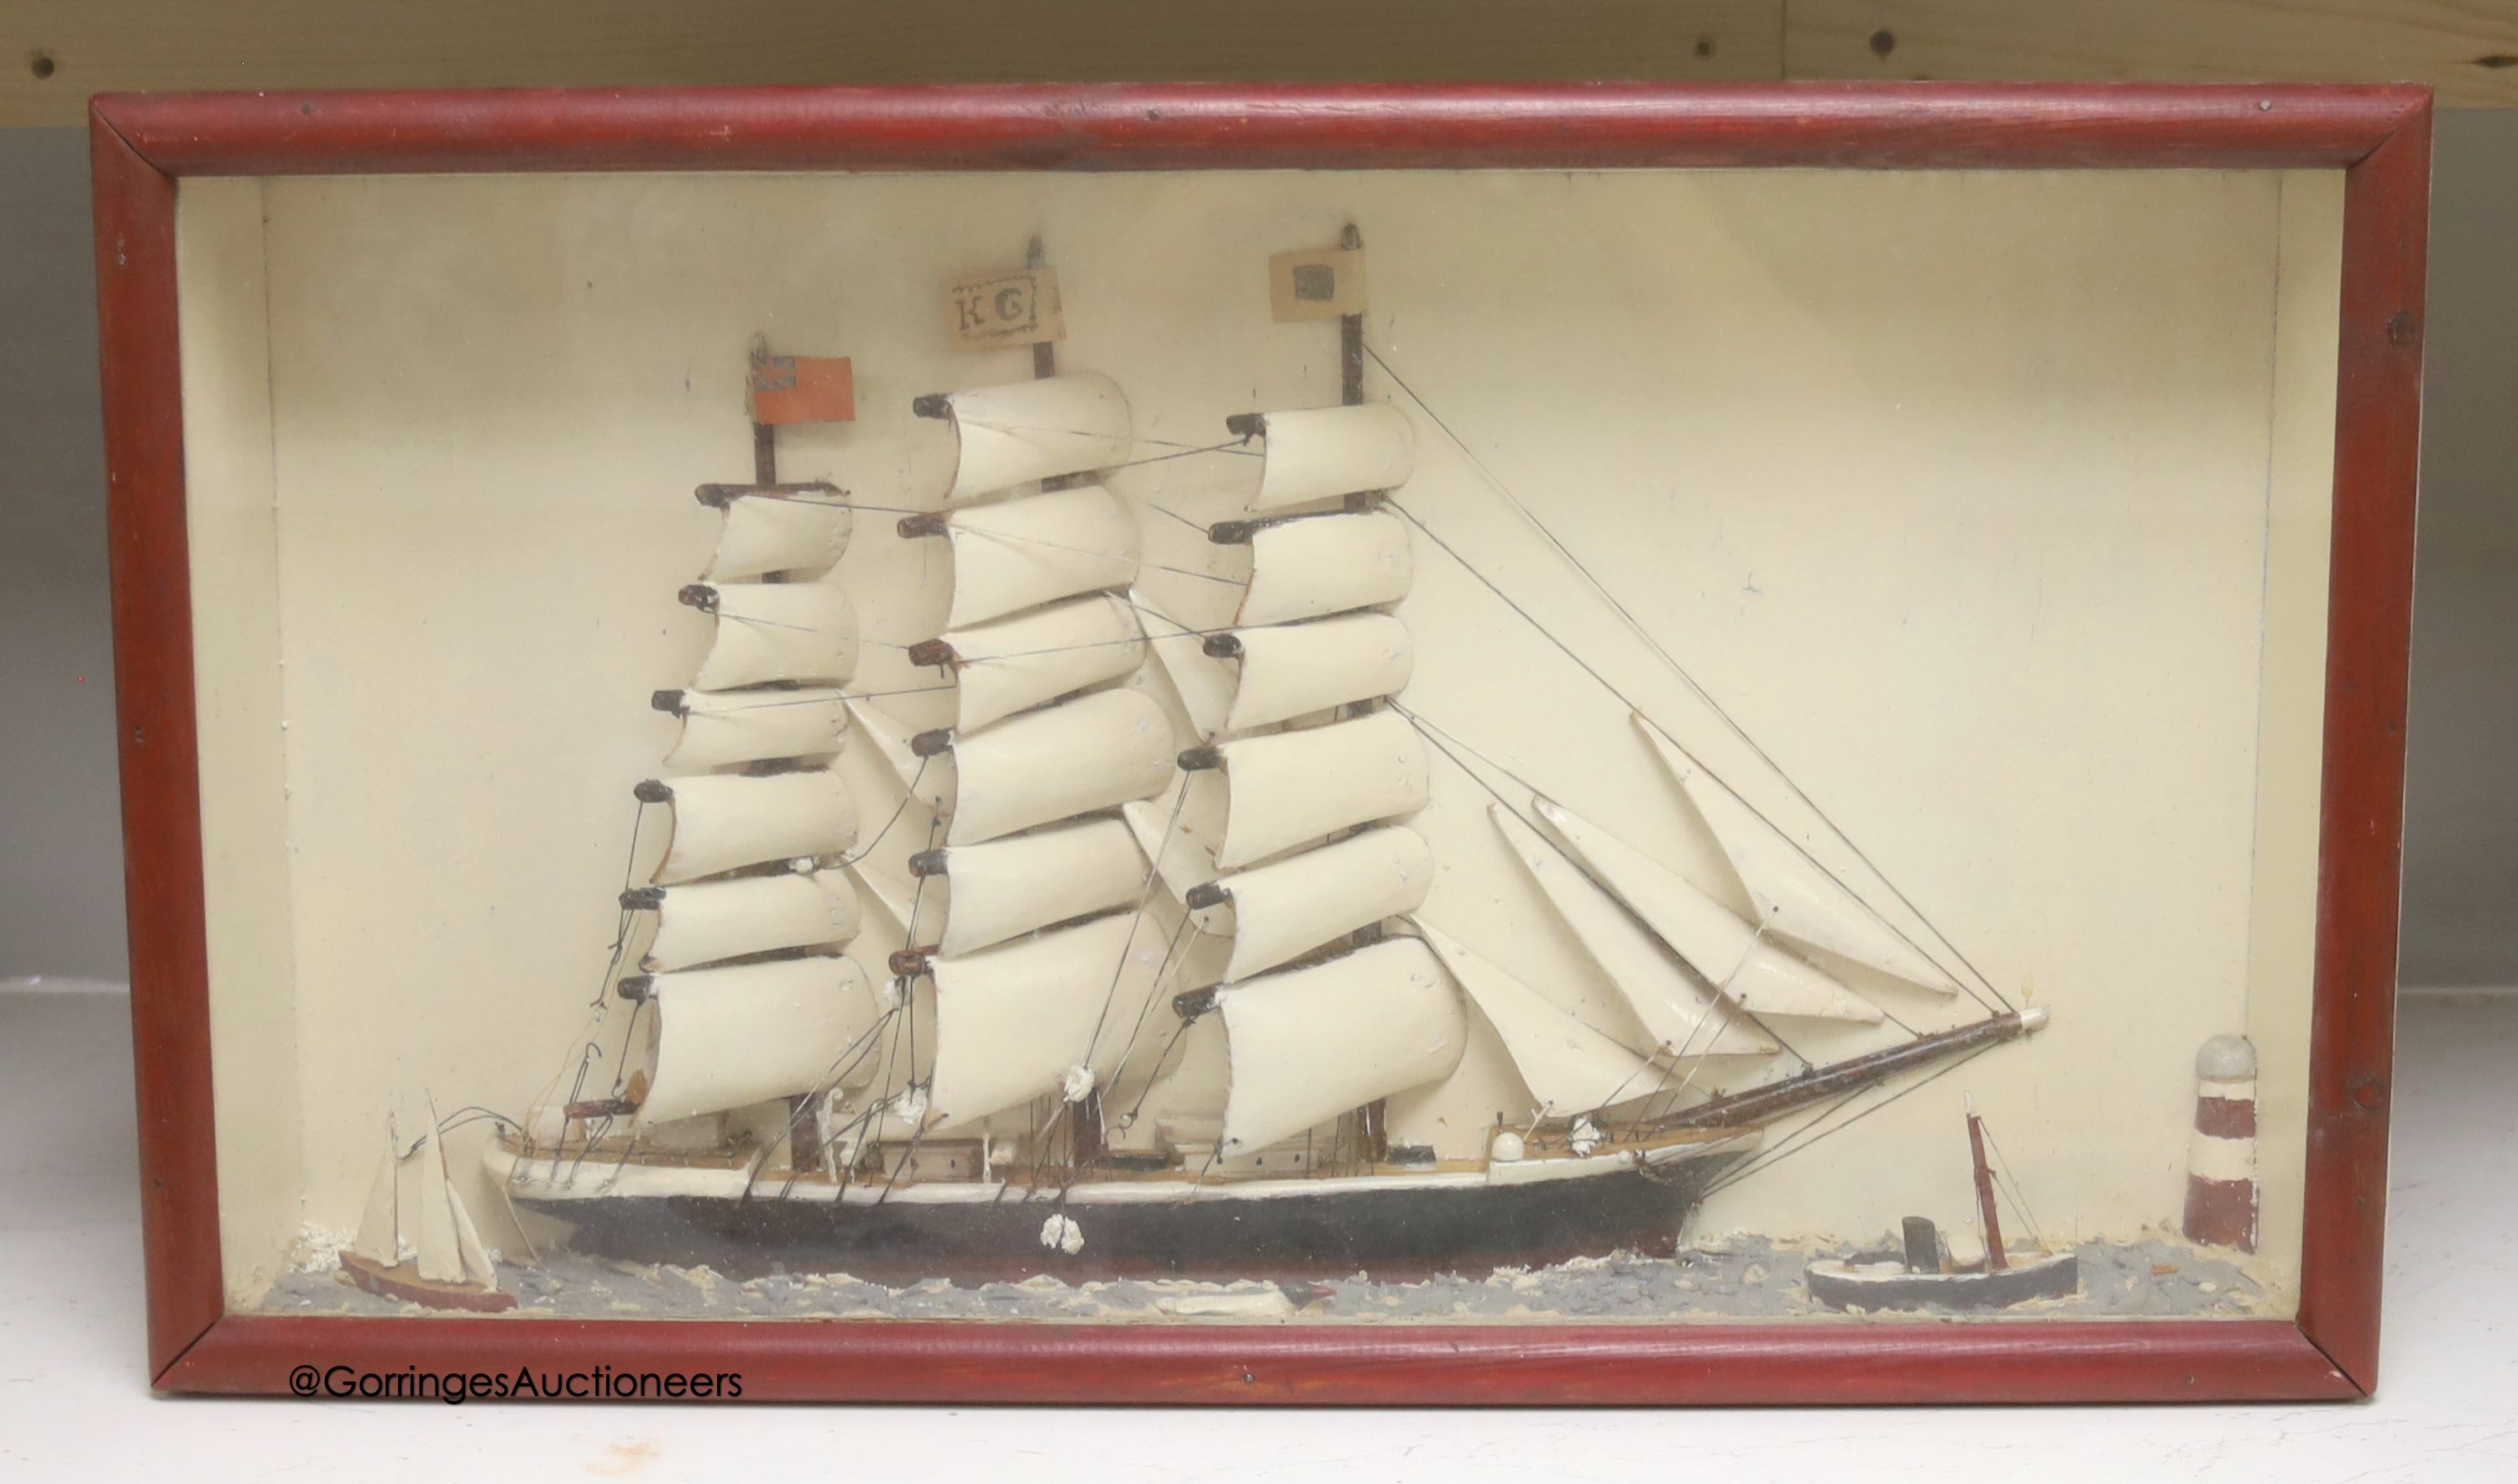 A Waterline ship diorama, glazed cabinet, 32 x 55cm